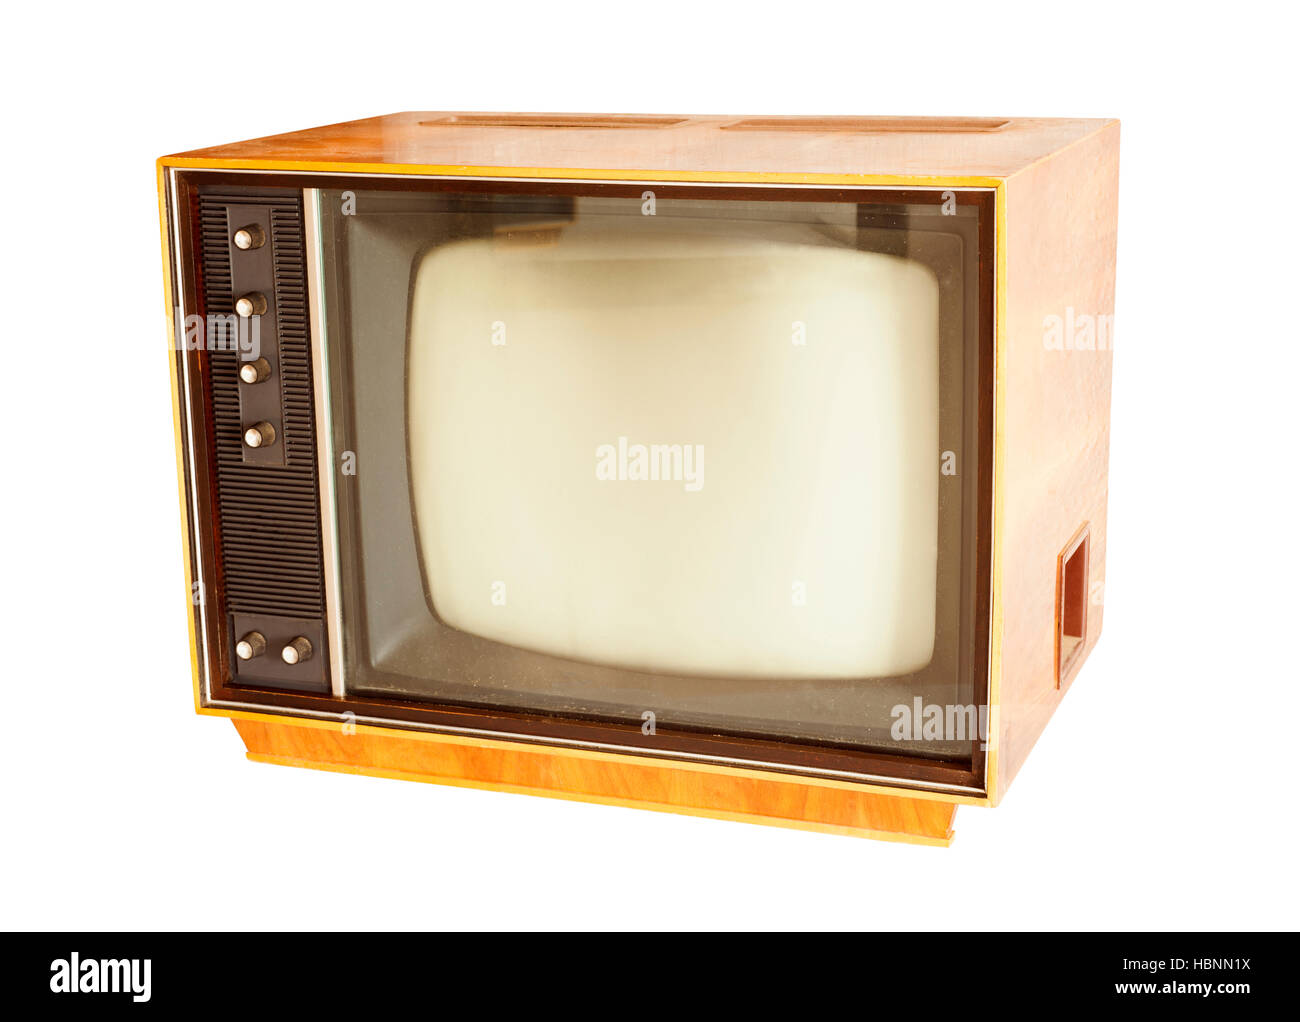 Tv vecchia immagini e fotografie stock ad alta risoluzione - Alamy